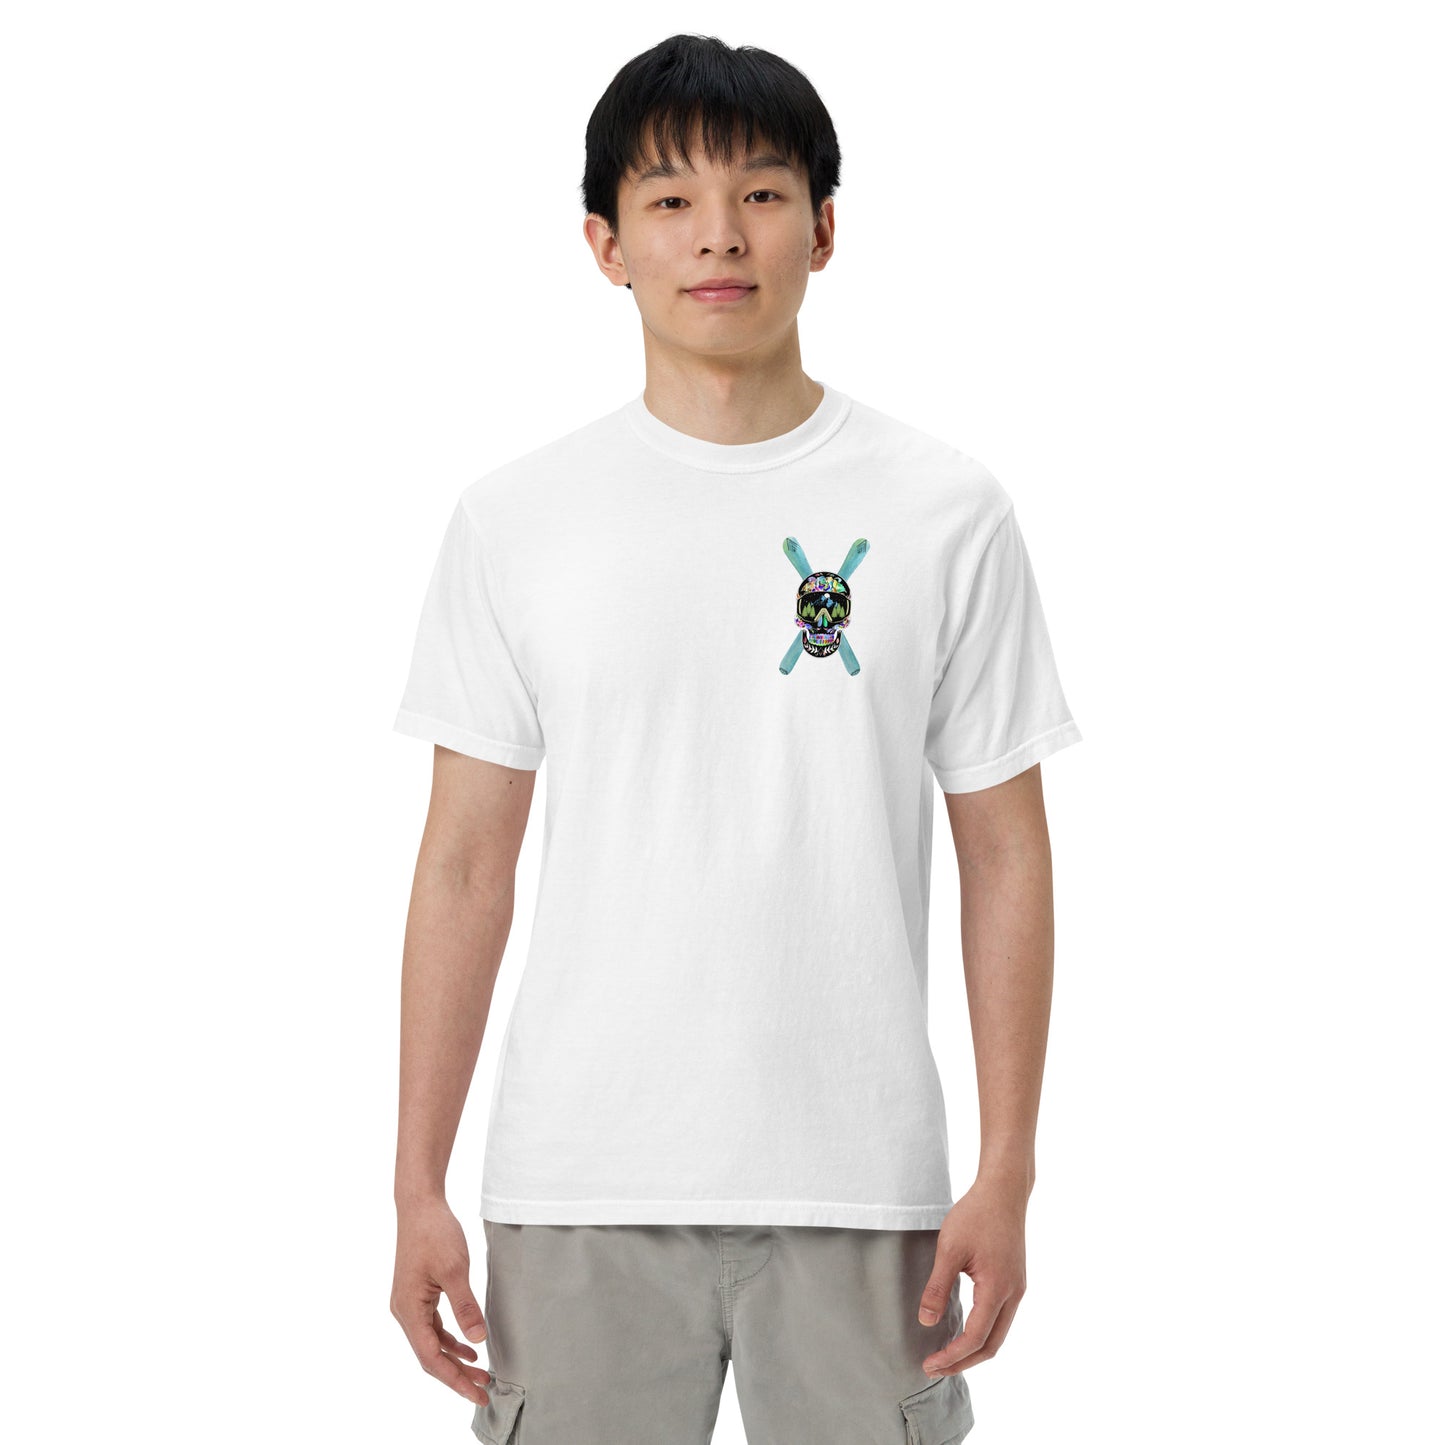 Power Life Men’s garment-dyed heavyweight t-shirt